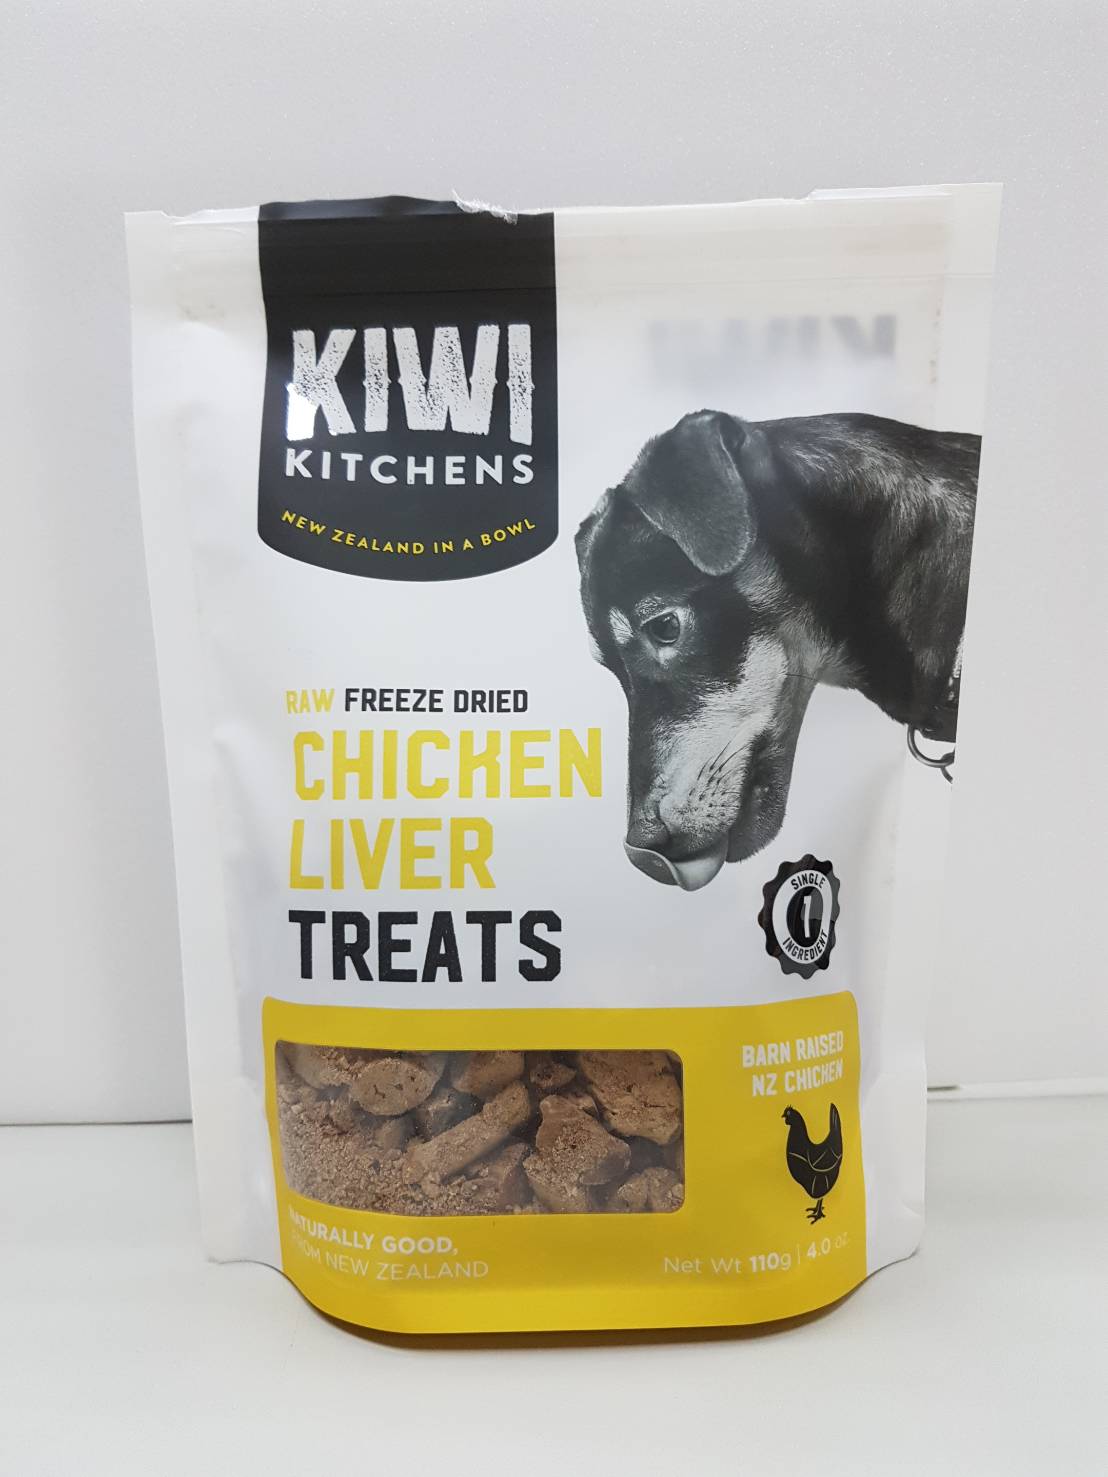 奇異廚房 純雞肝
Kiwi Kitchens Treat - Chicken Liver